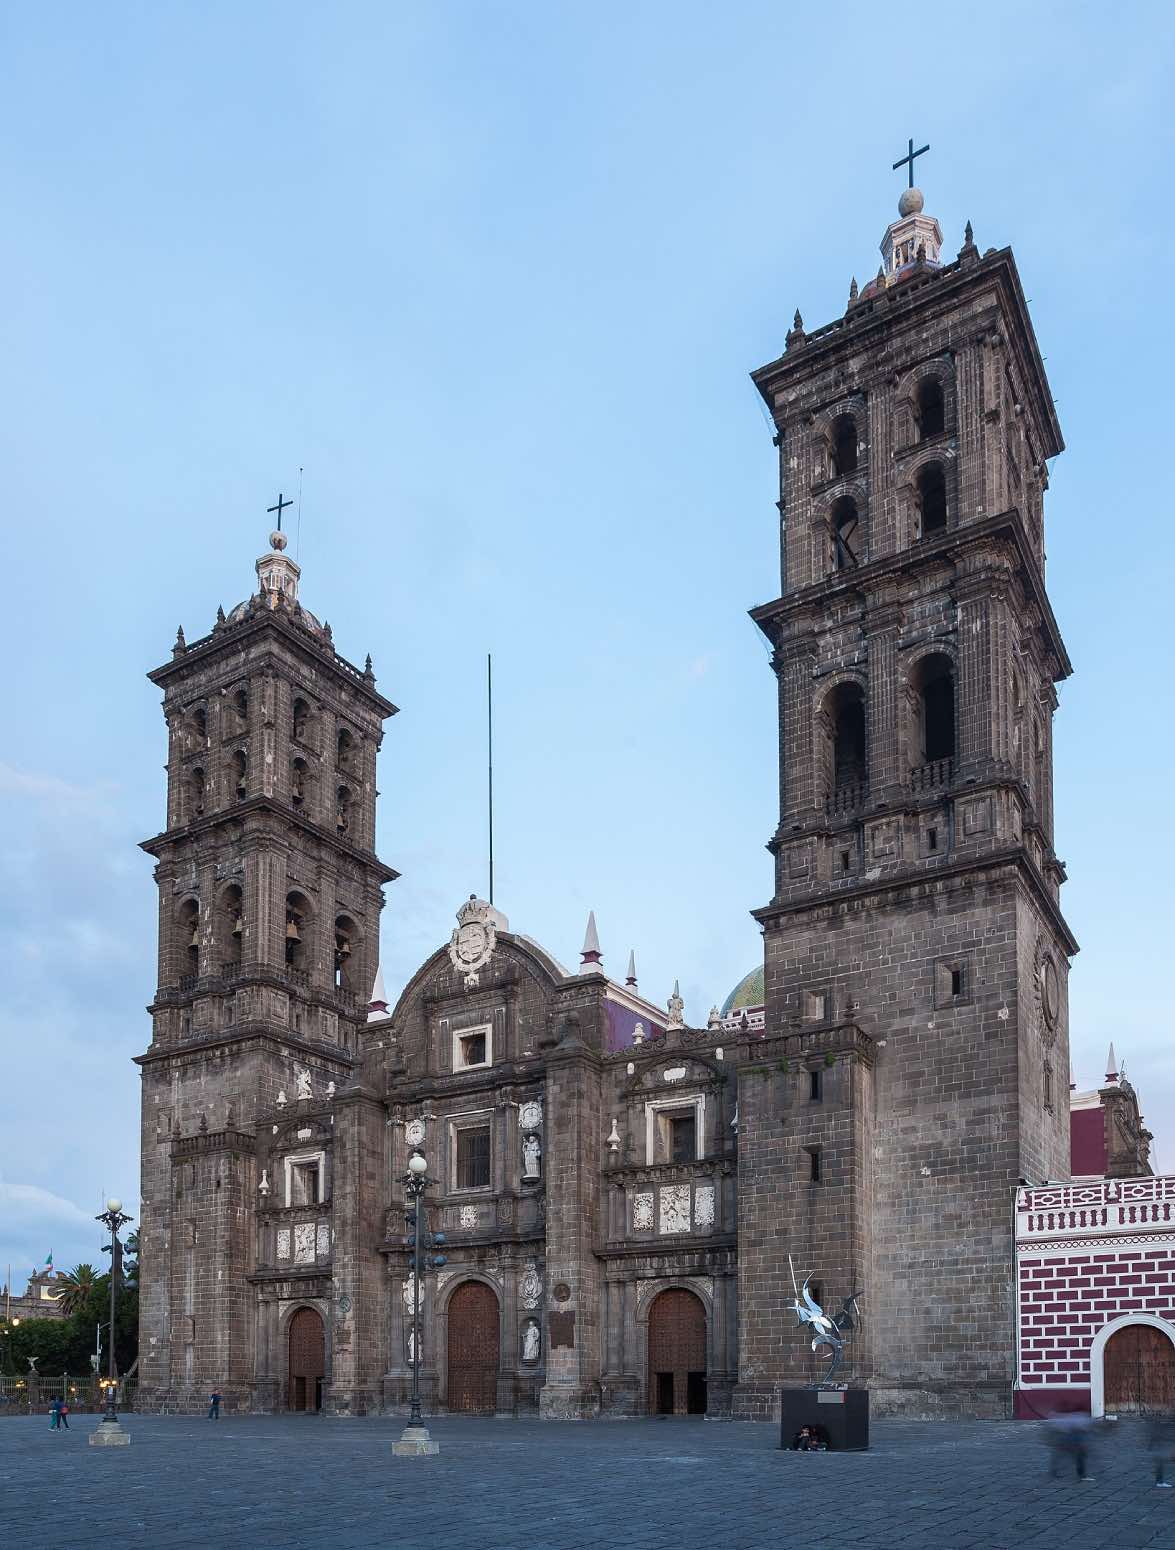 arquitectura barroca en mexico, catedral de puebla, fachada de piedra